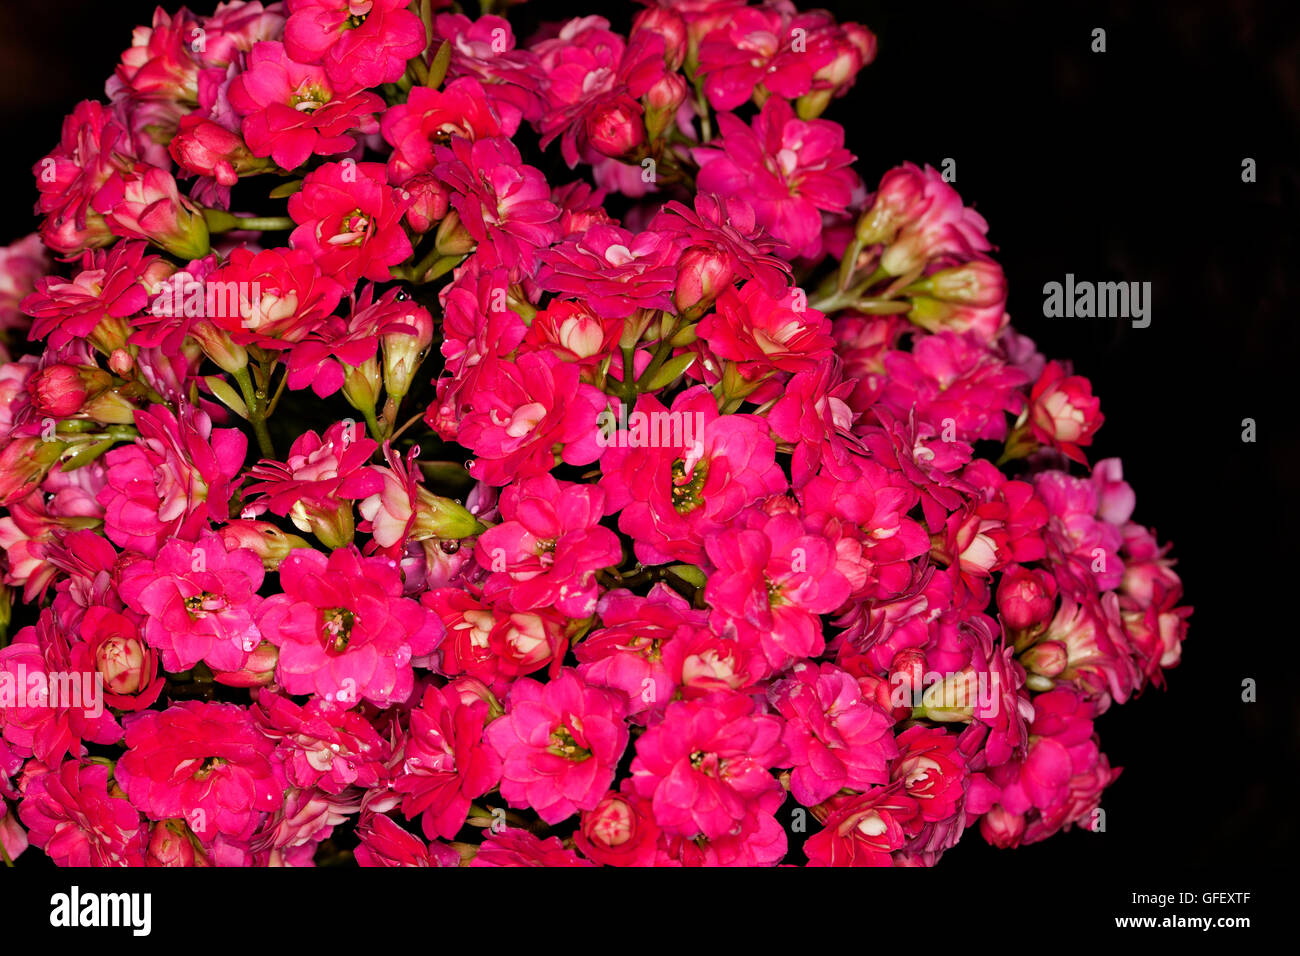 Close-up of cluster dense de couleurs rouge / rose double fleurs de plante succulente Kalanchoe blossfeldiana sur hybride drk background Banque D'Images